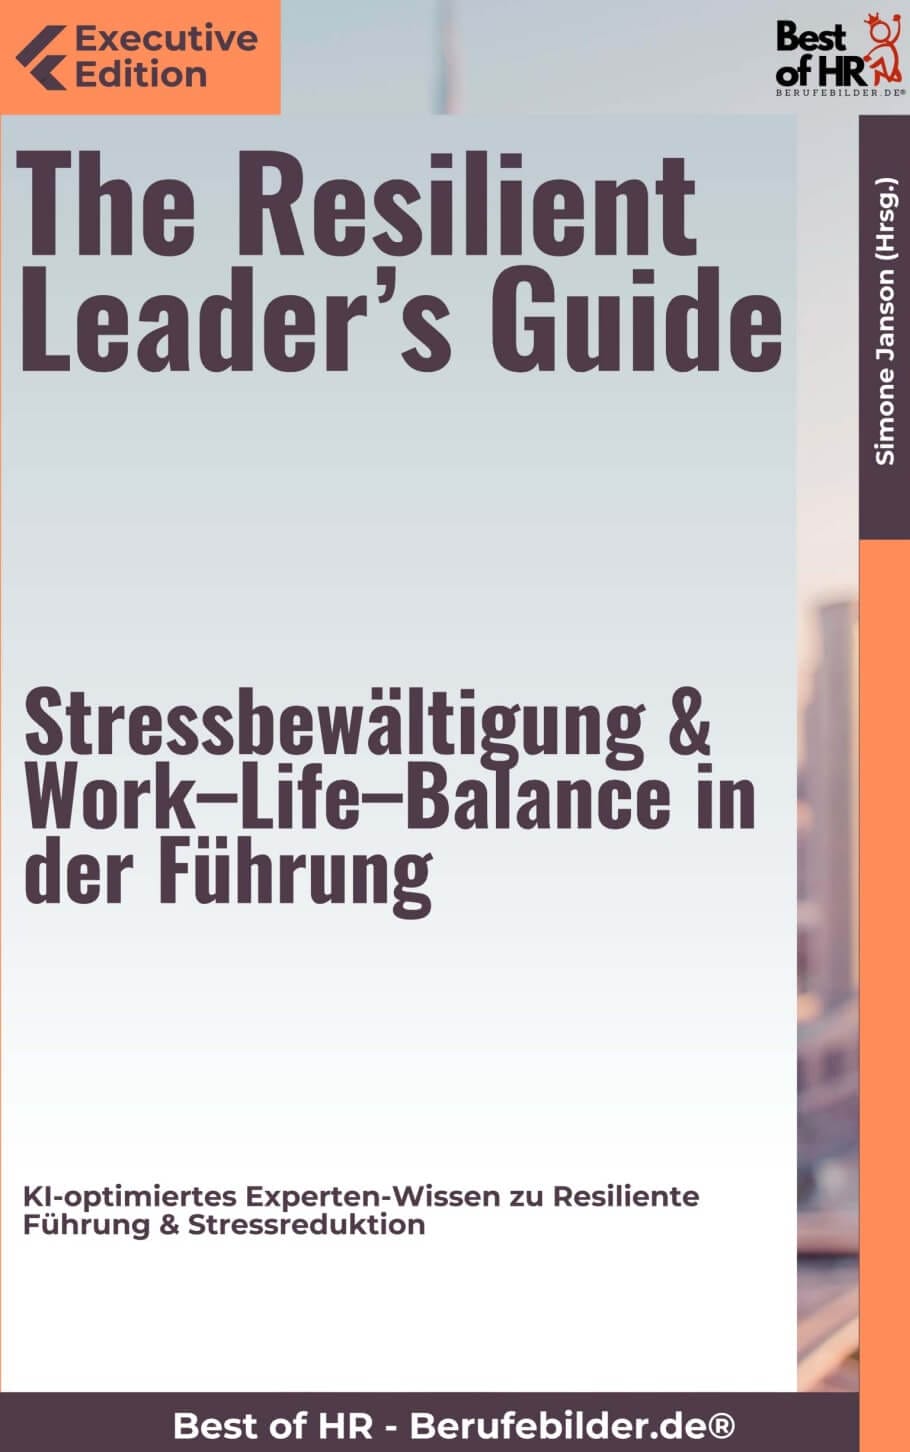 The Resilient Leader’s Guide – Stressbewältigung & Work–Life–Balance in der Führung